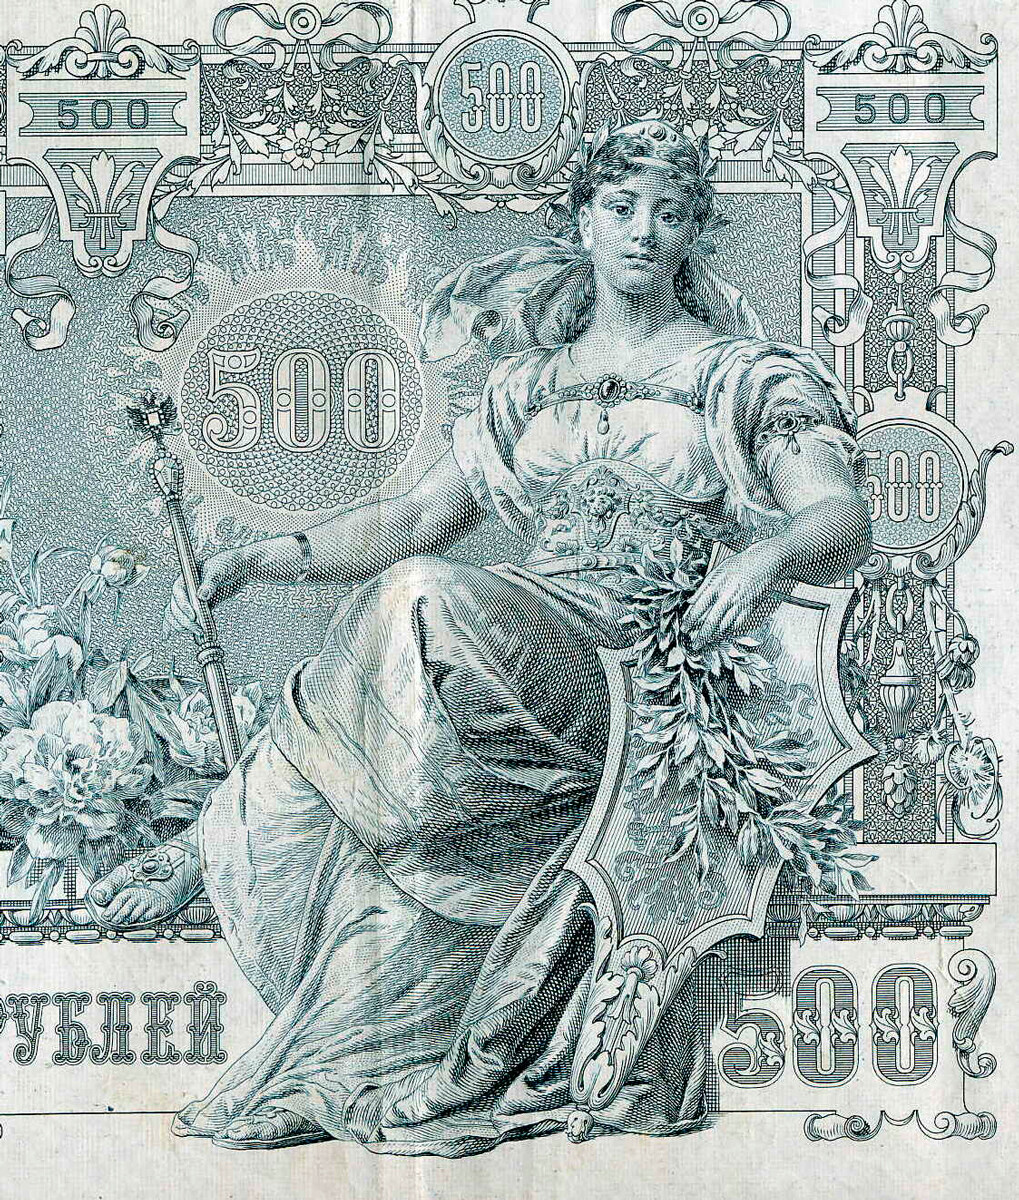 Personificación de Rusia en el billete de 500 rublos del Imperio ruso de 1912.